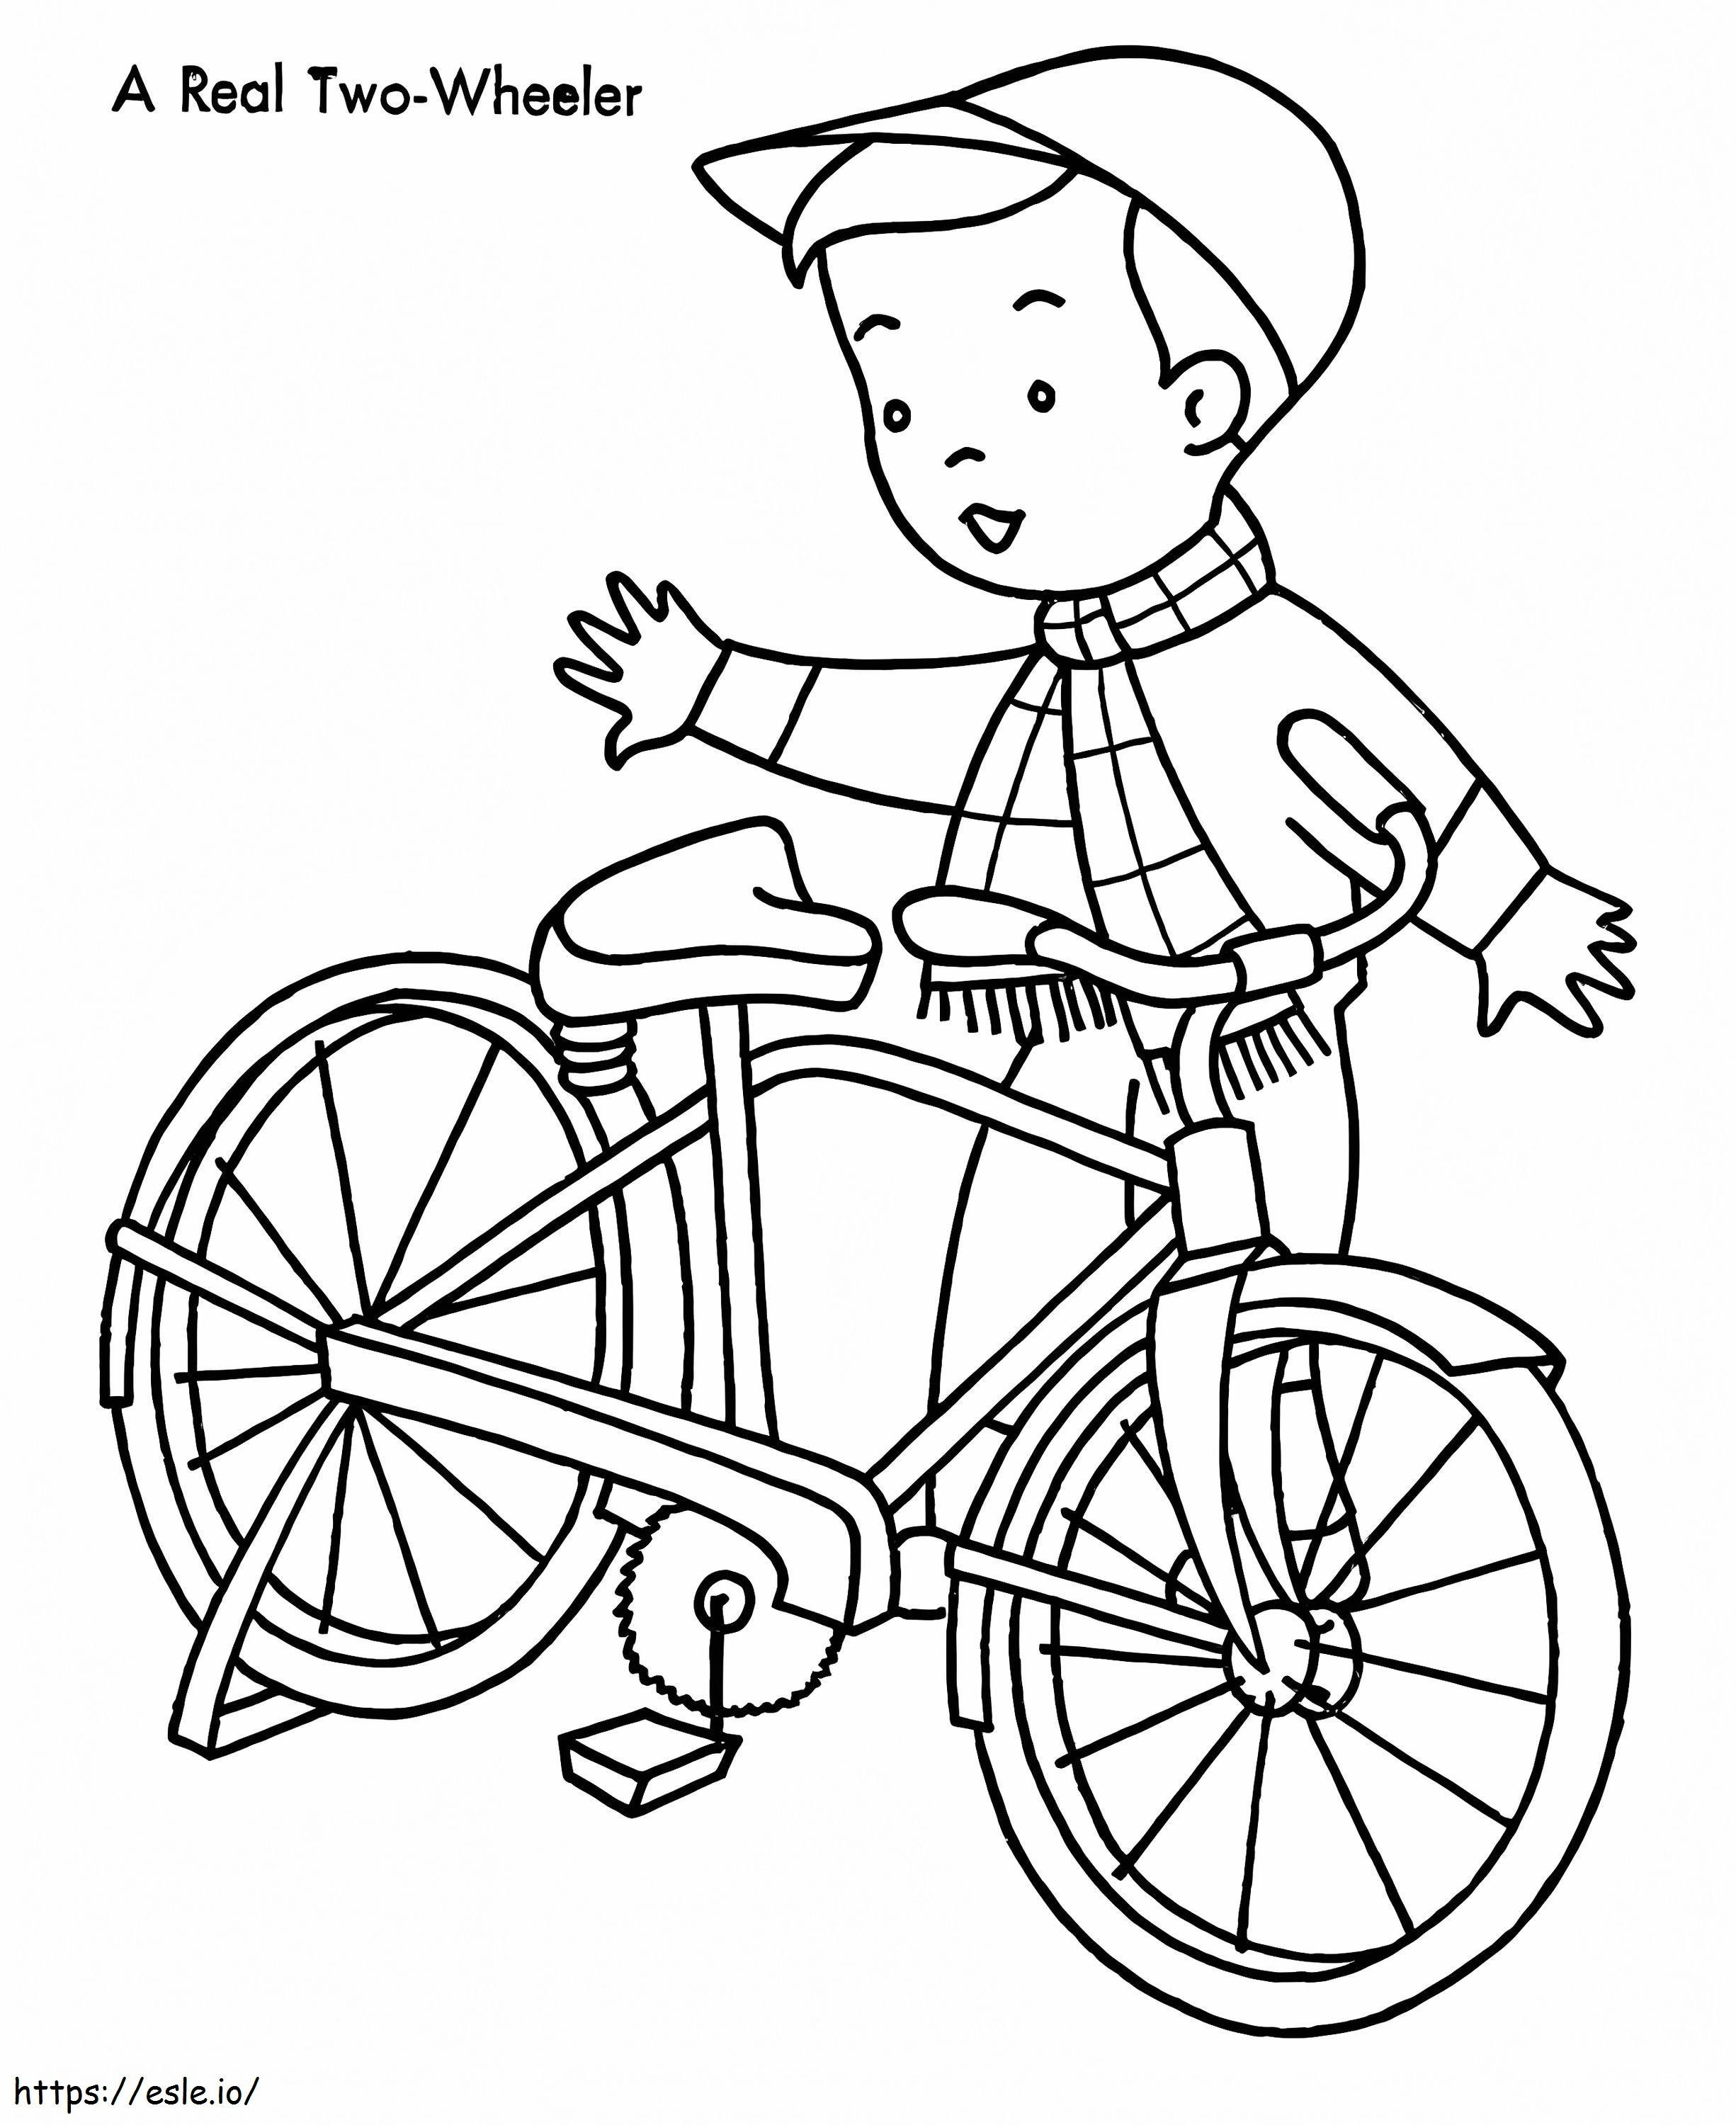 Menino e sua bicicleta para colorir